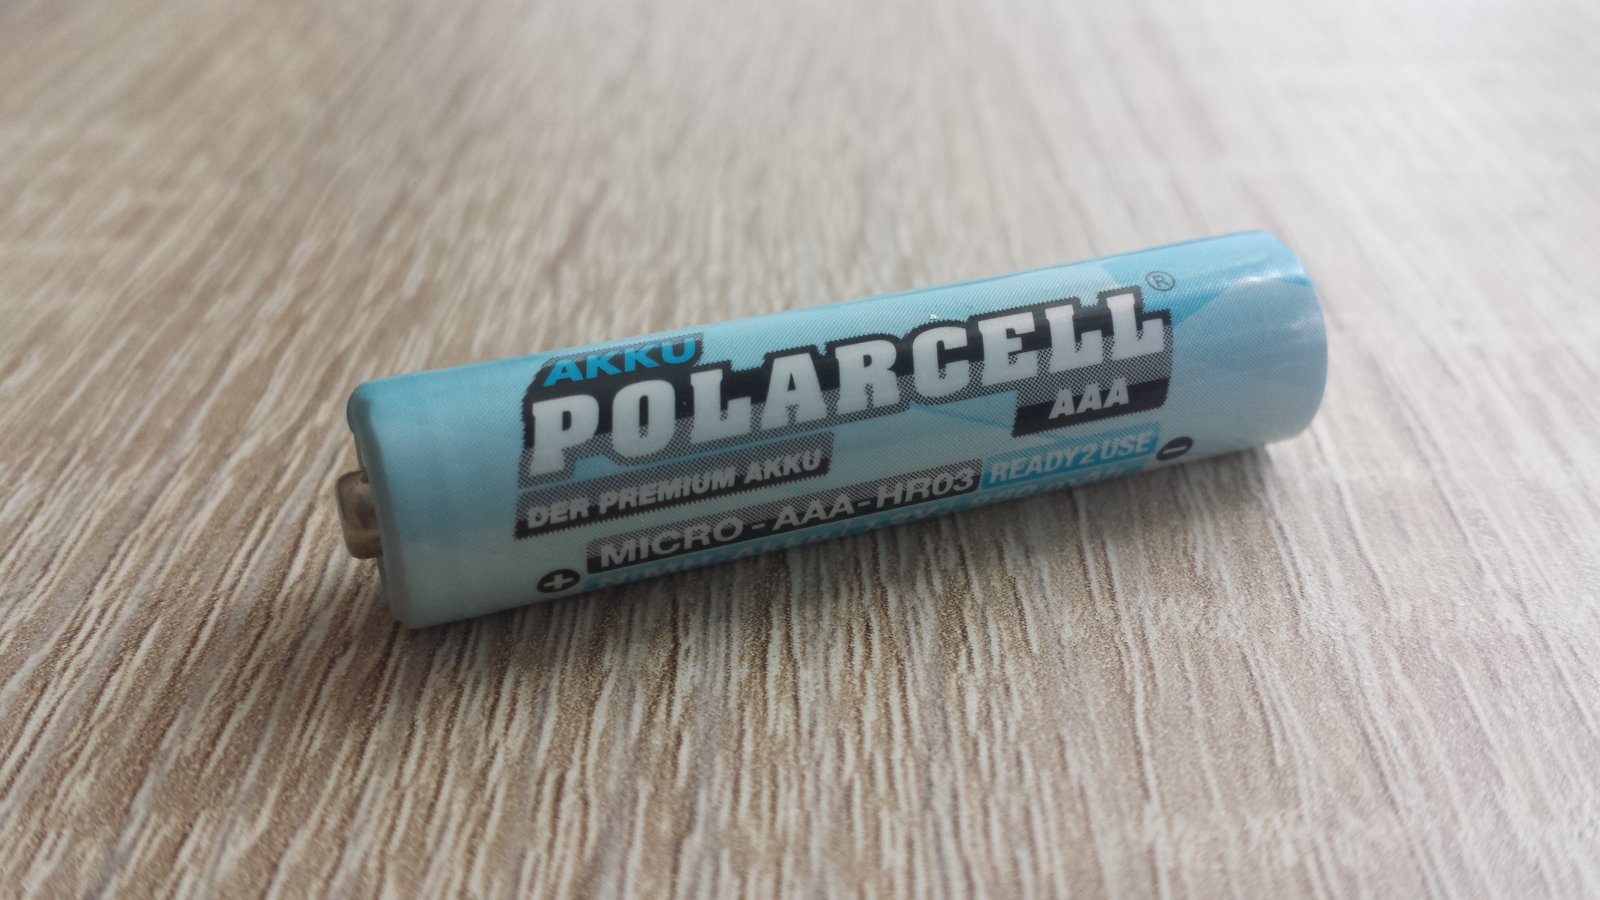 Polarcell 950